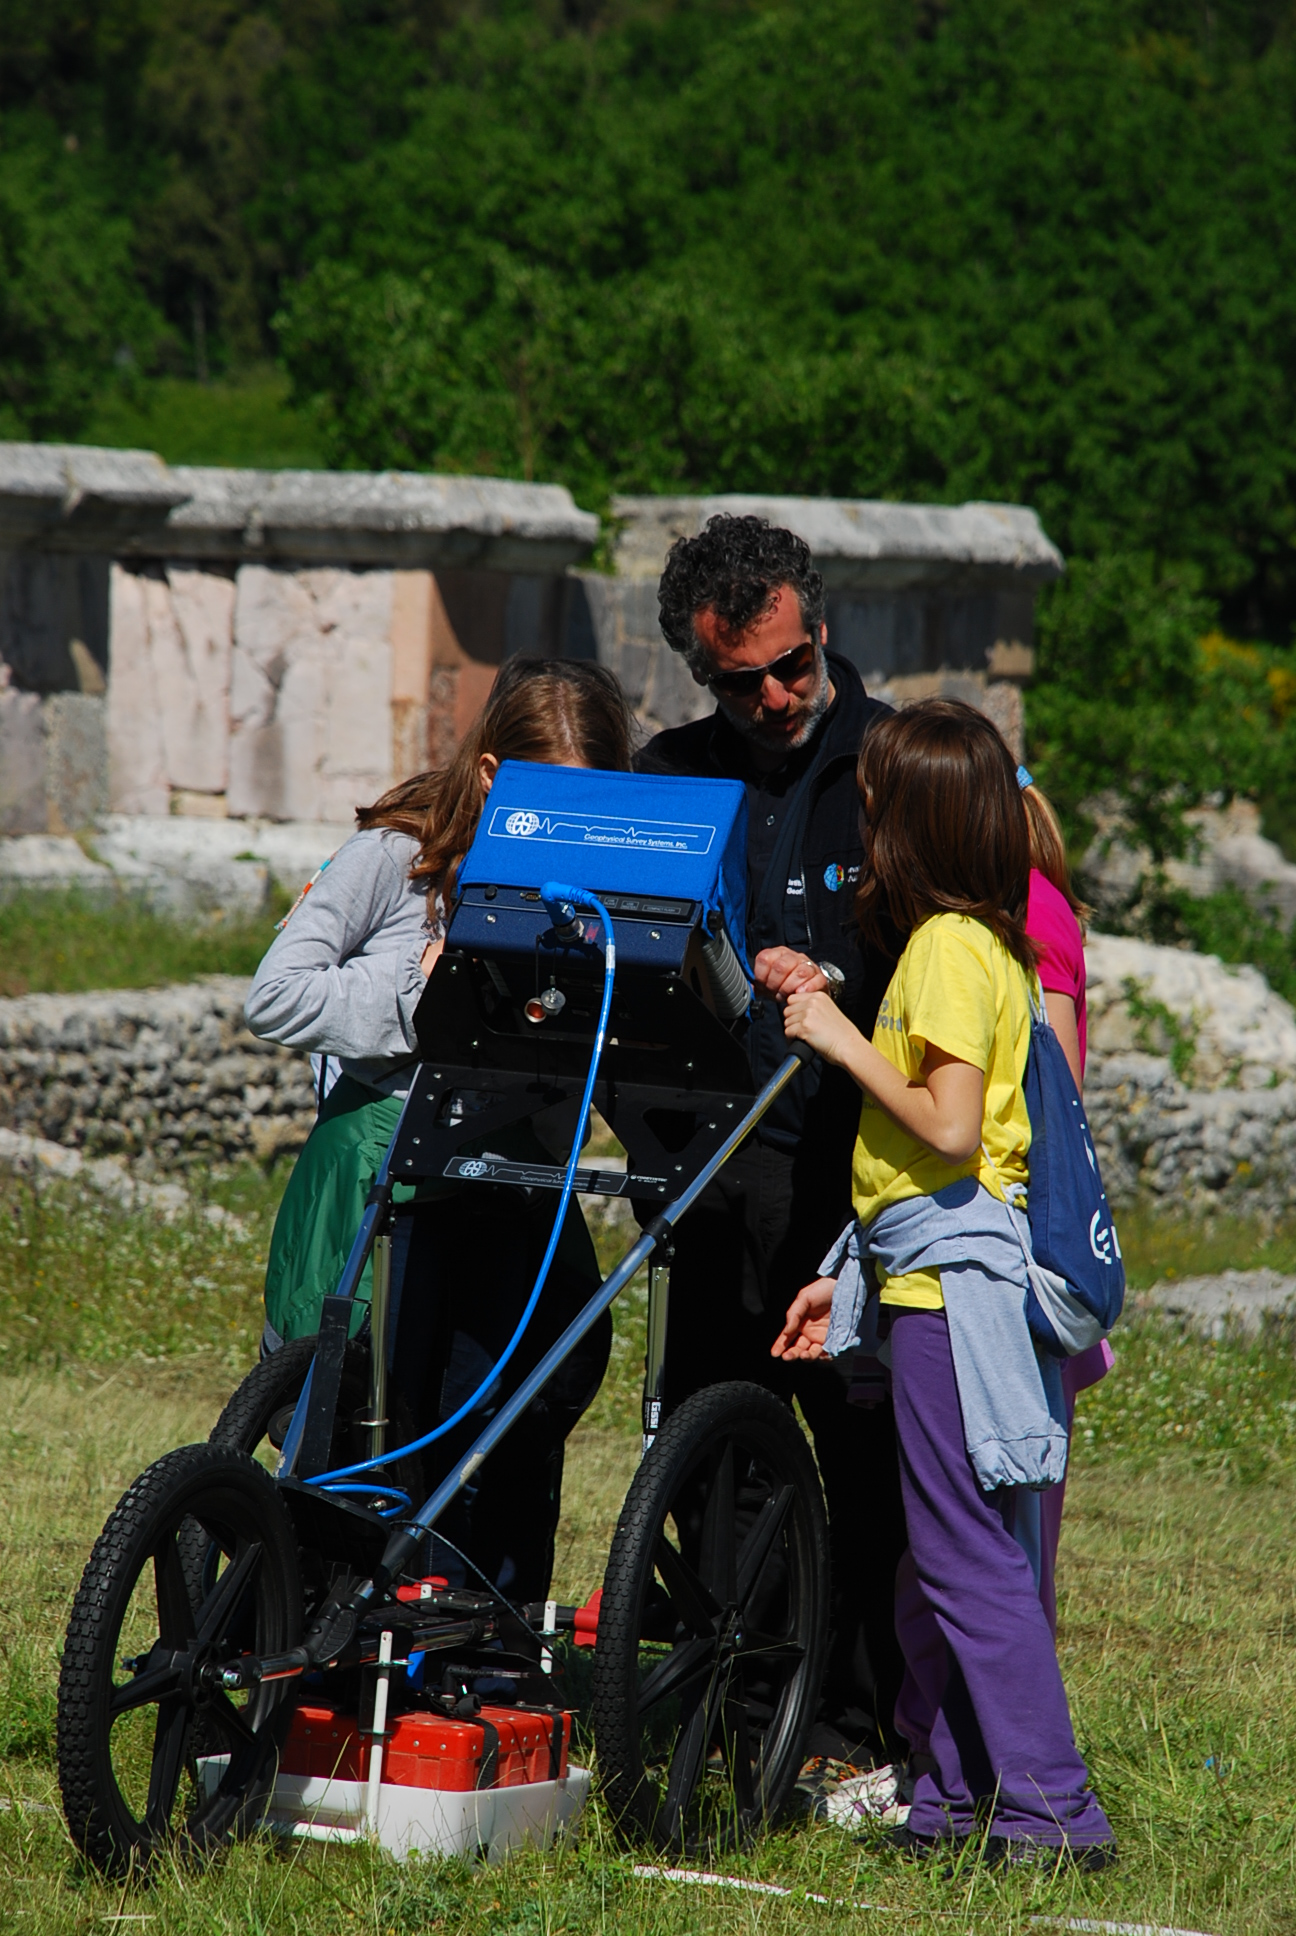 Al via la seconda tappa del progetto “Approccio multidisciplinare al sito archeologico di Carsulae”: dal 22 al 24 maggio tre giorni d’incontri con le scuole